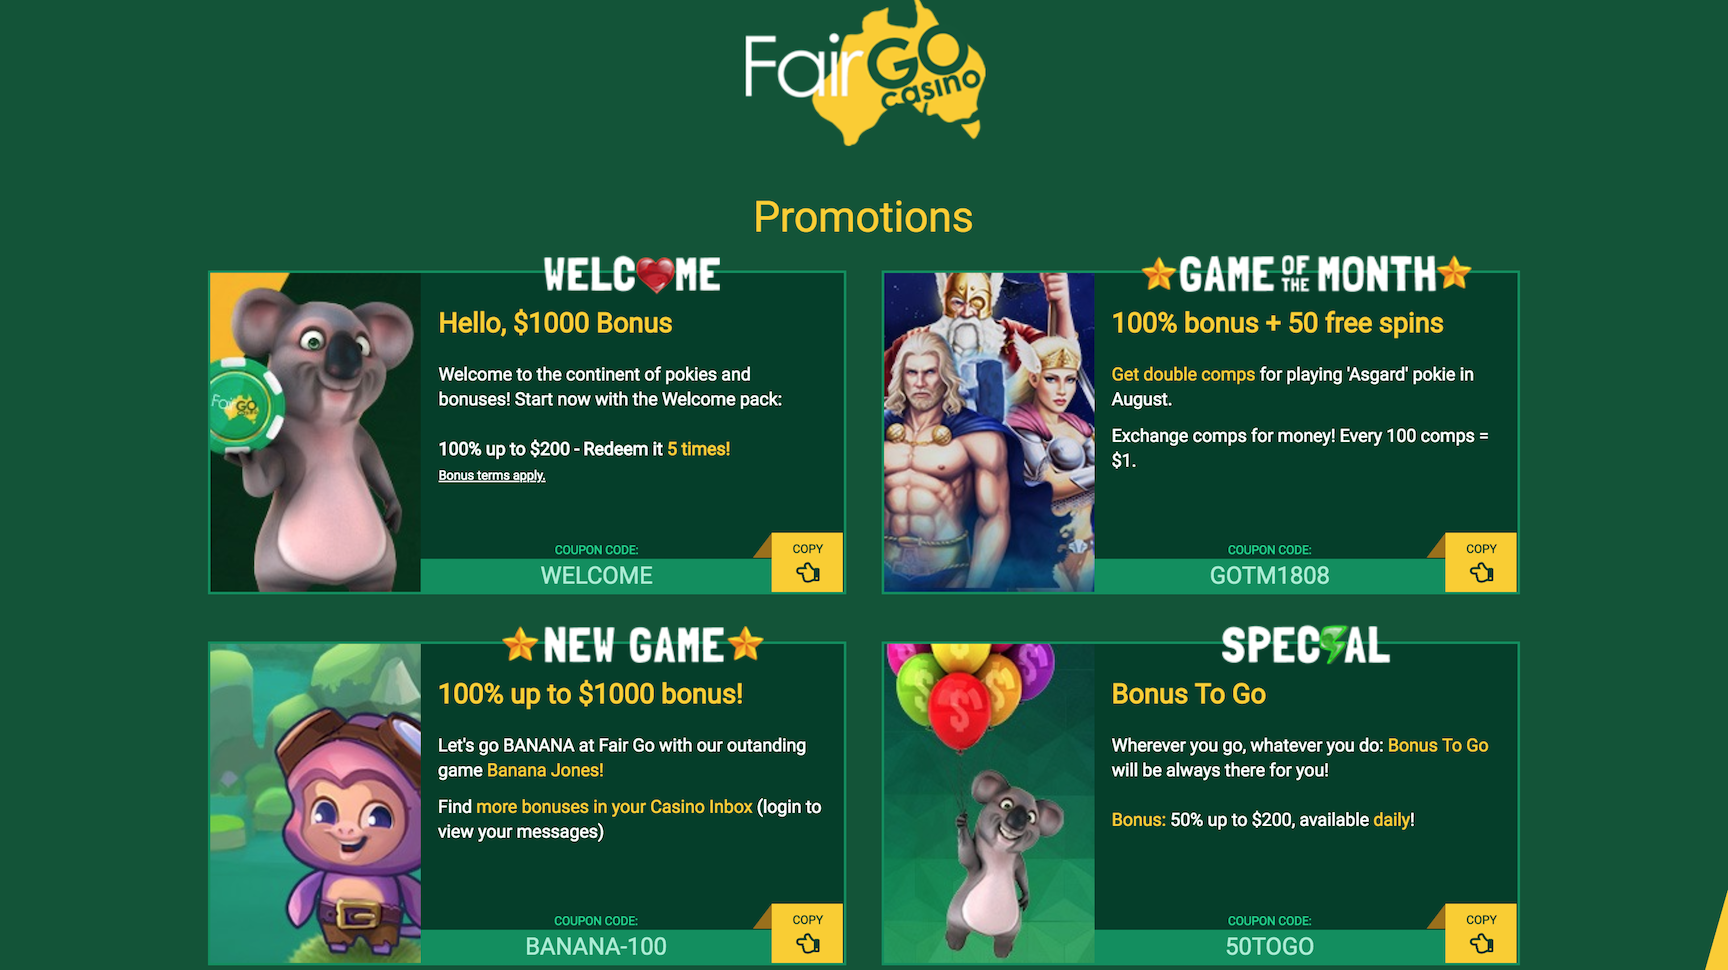 Fair go casino free spins bonus codes redeem